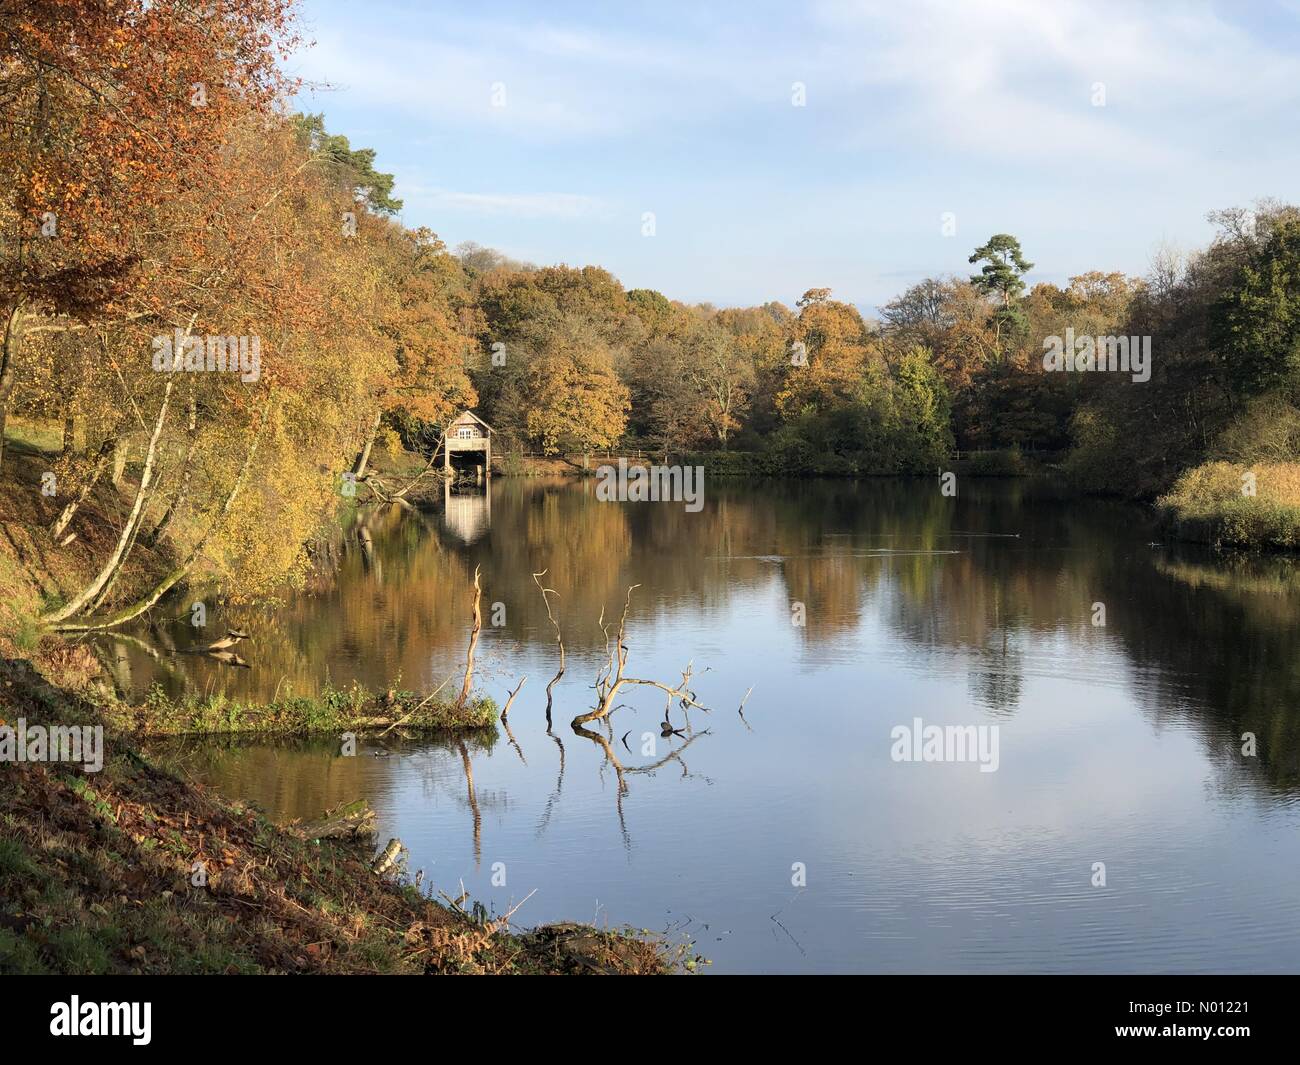 Winkworth Arboretum, Godalming, Surrey. 16 de noviembre de 2019. Una gloriosa de empezar el día para el hogar de los condados. Winkworth Arboretum en Godalming, Surrey. Crédito: jamesjagger/StockimoNews/Alamy Live News Foto de stock